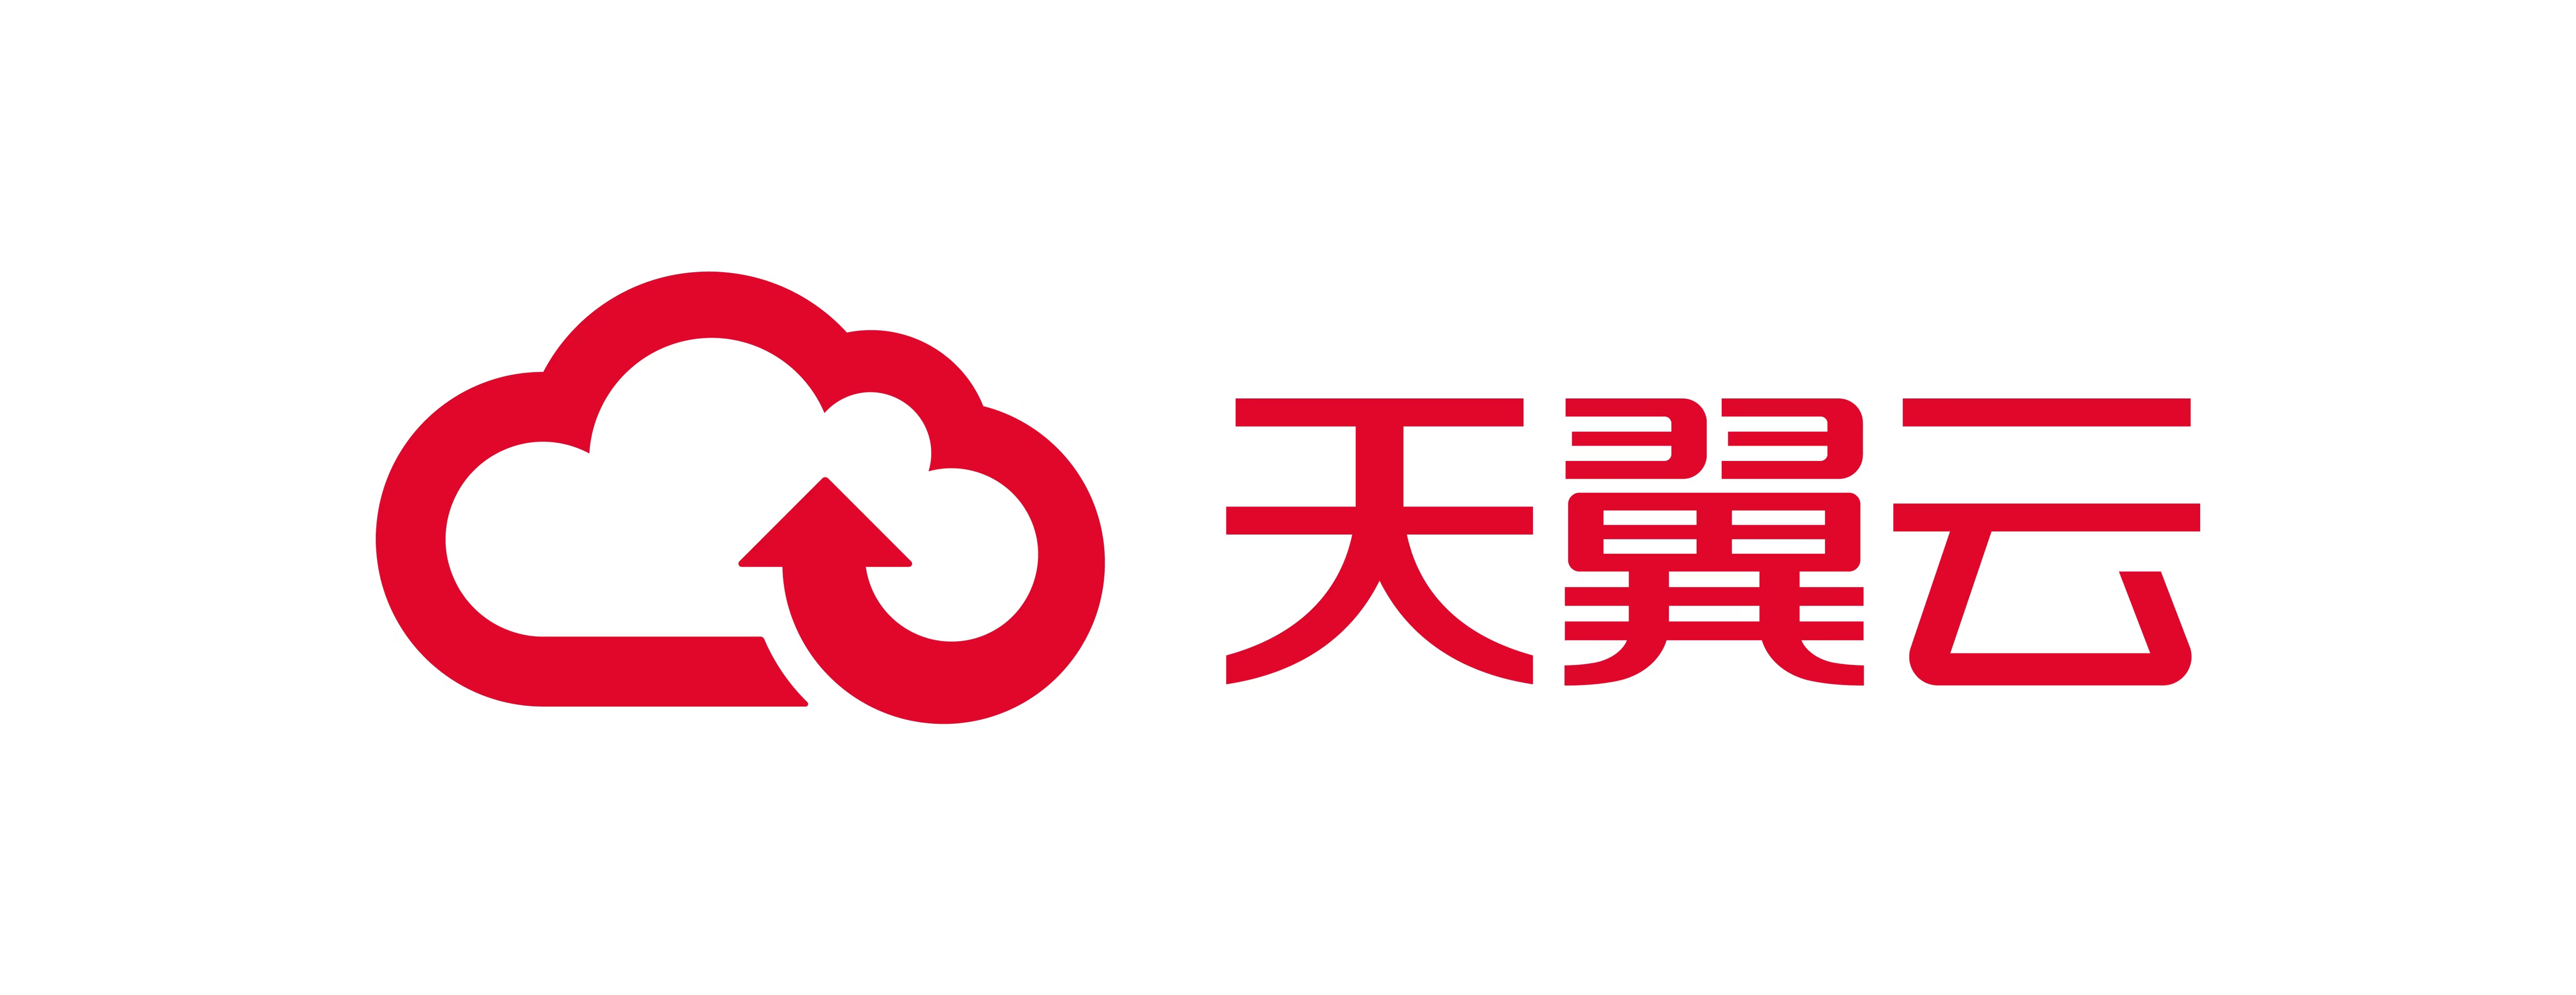 天翼云logo大图图片